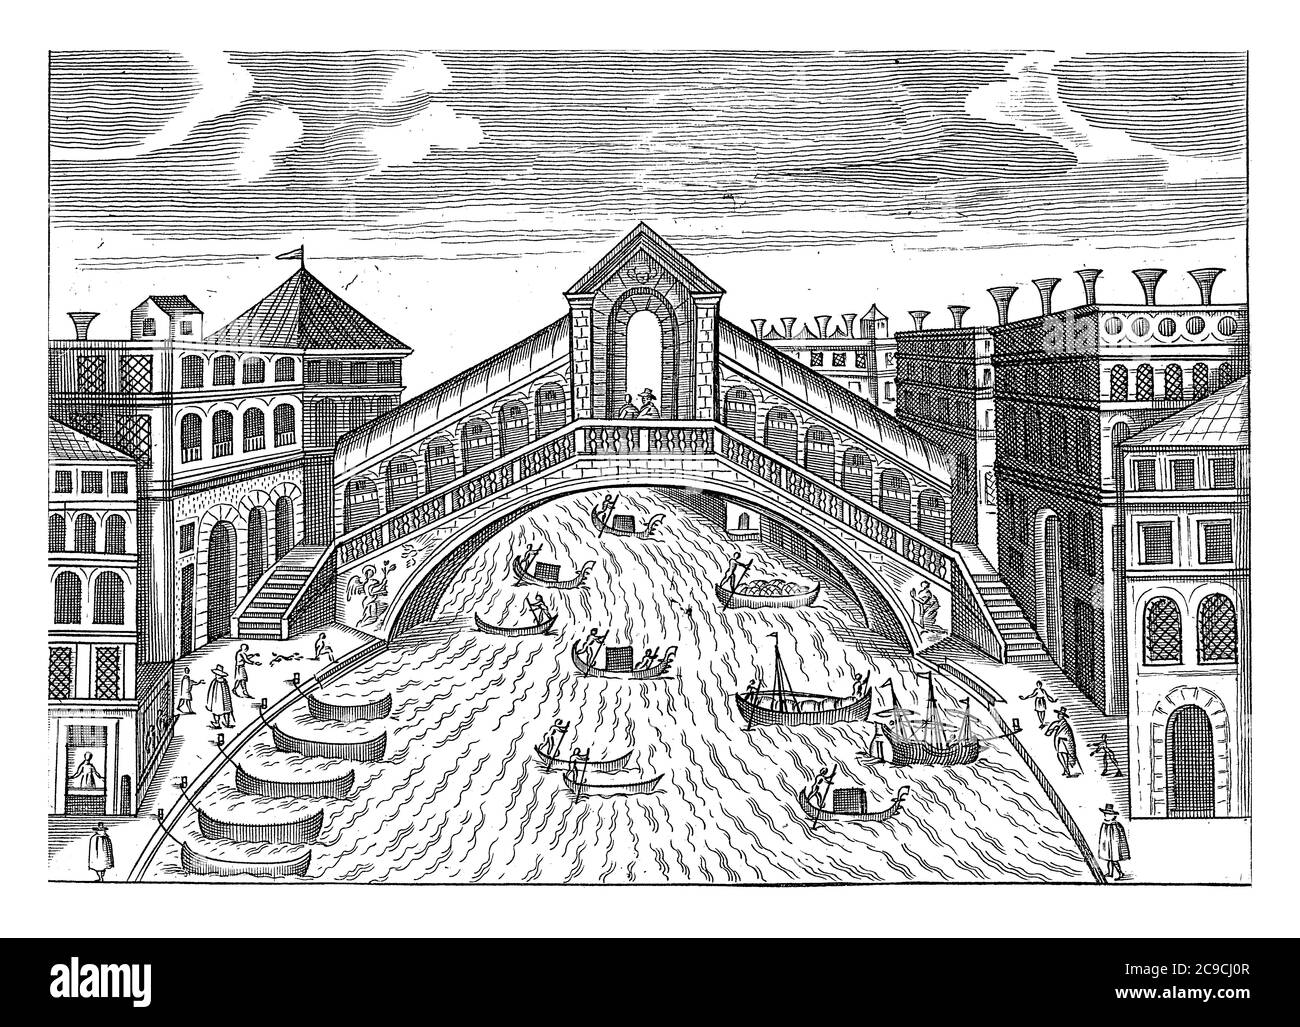 Rialtobrücke in Venedig, anonym, 1600 - 1699 die Rialtobrücke über den Canal Grande in Venedig. Segelboote und Gondeln segeln auf dem Wasser, vintage en Stockfoto